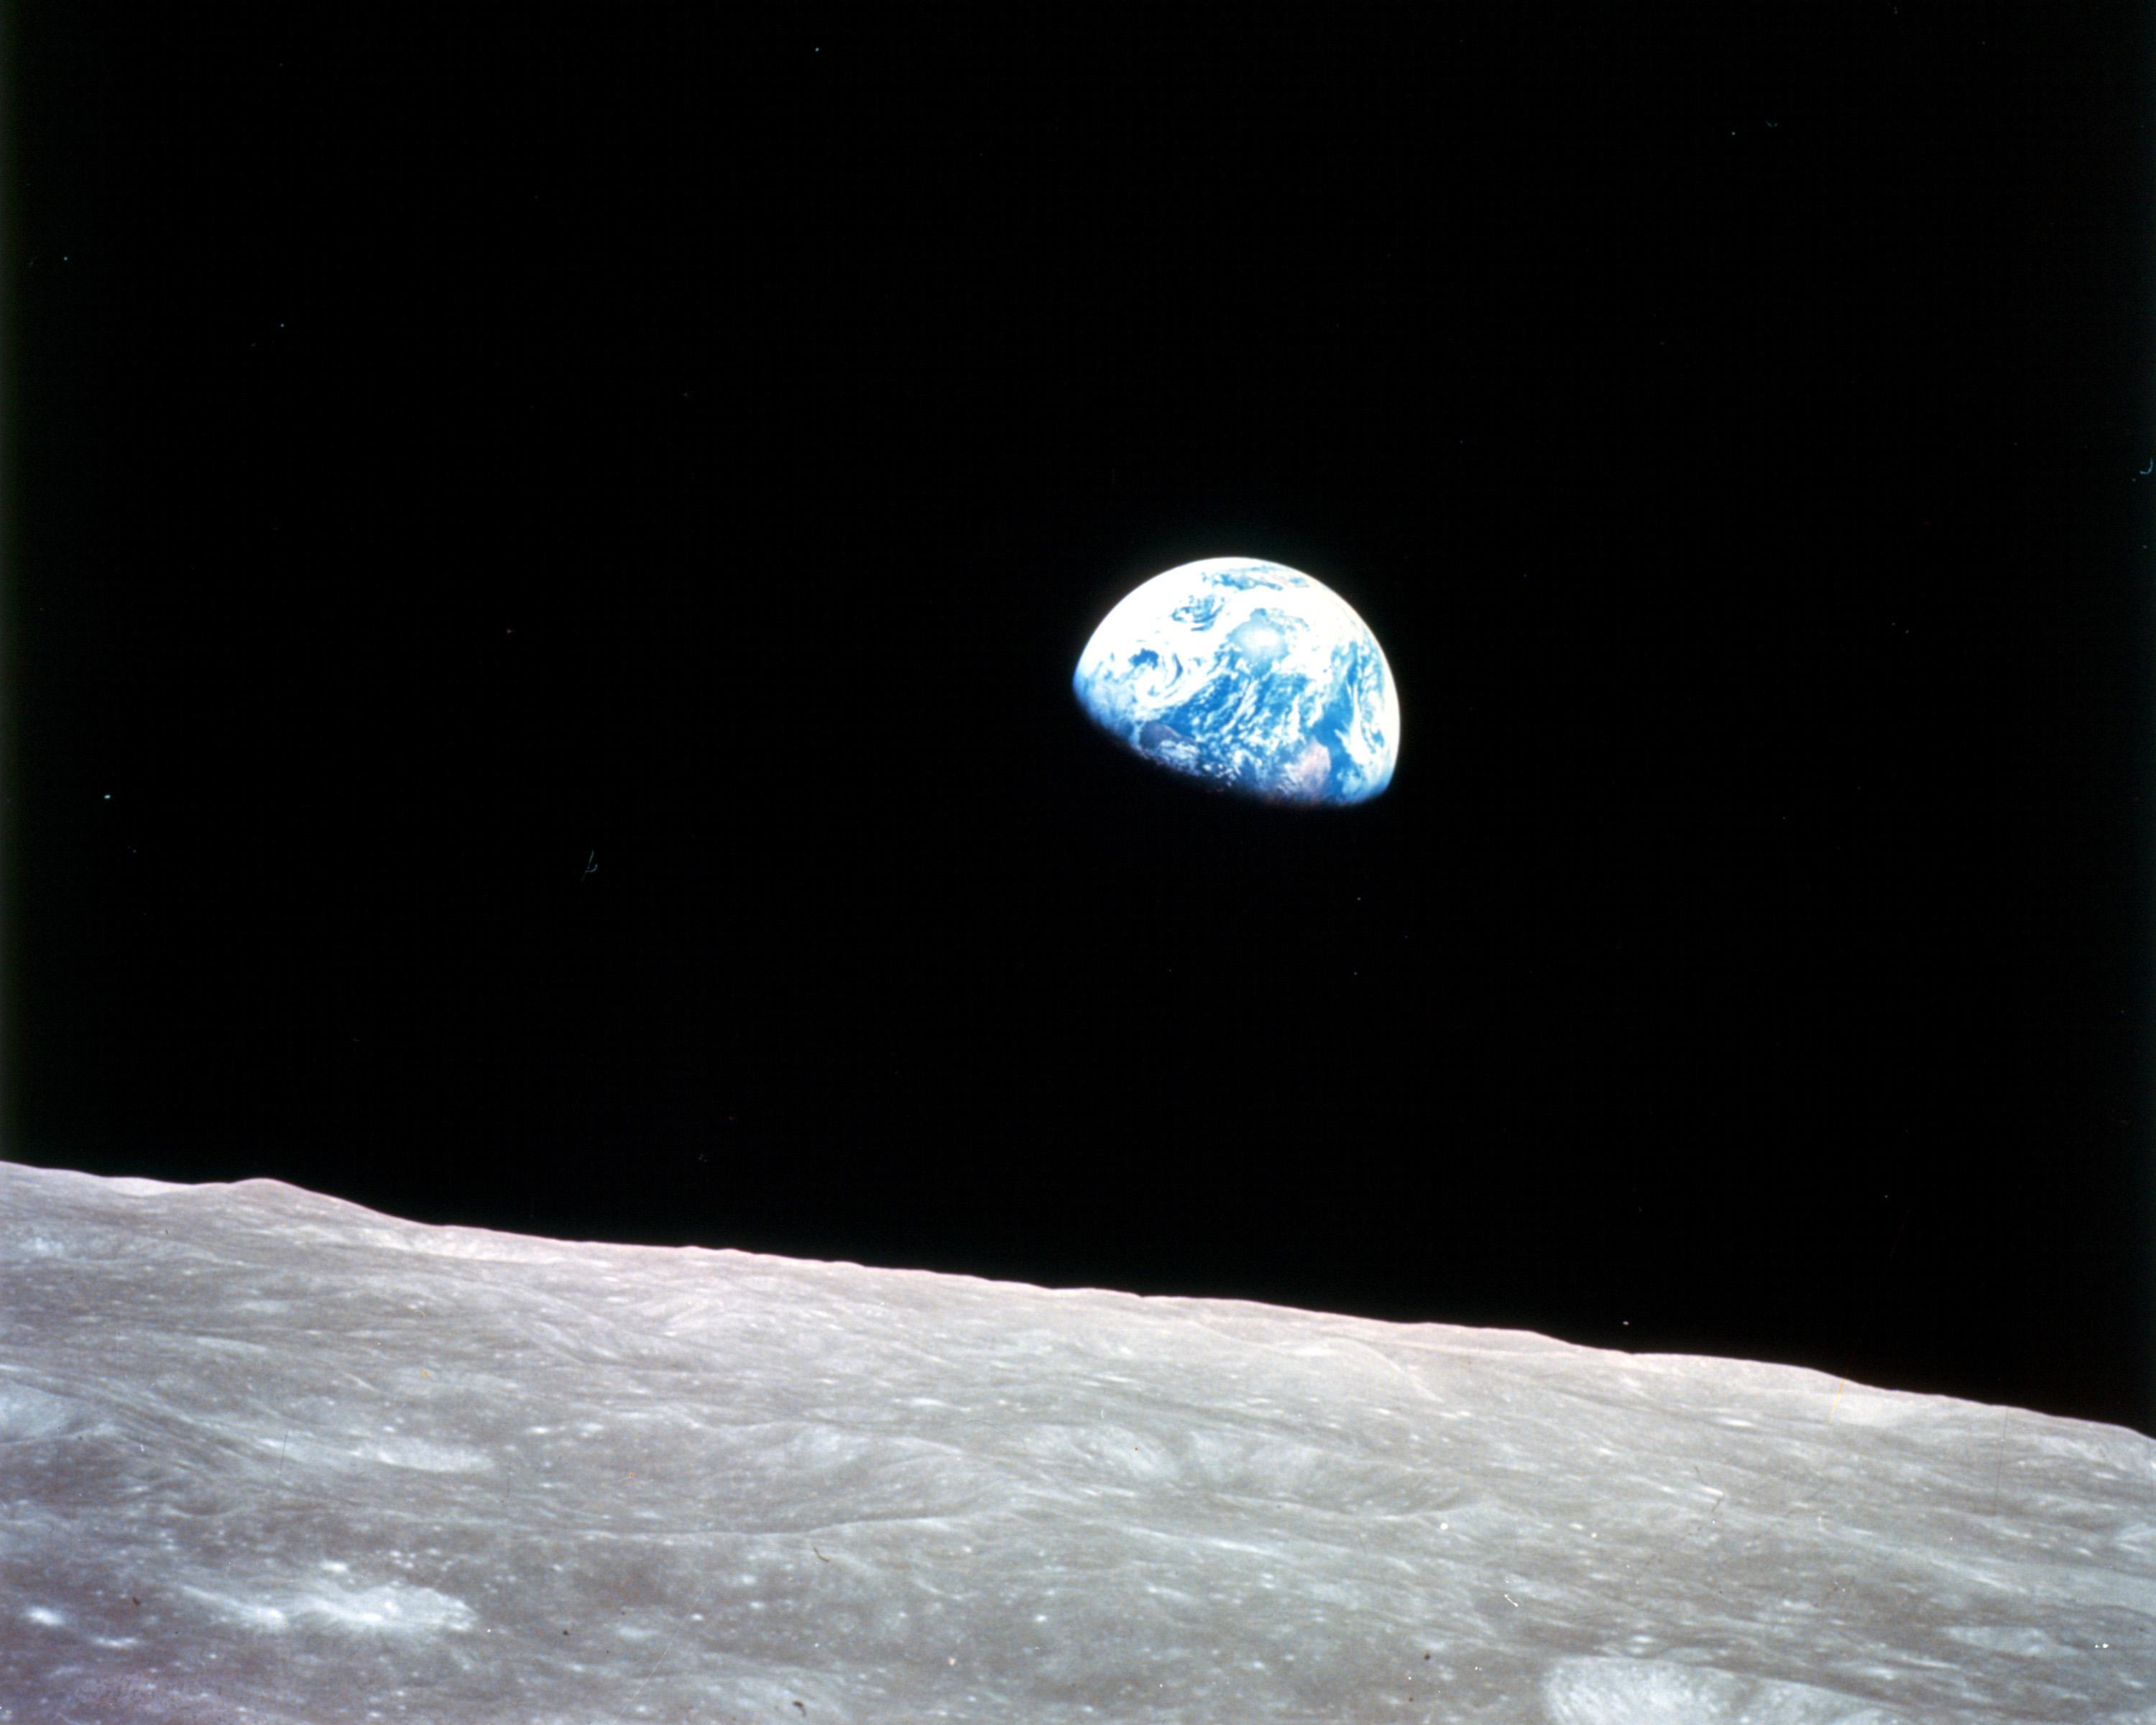 La vista iconica della Terra conosciuta come "Alba" è stato catturato per la prima volta dagli astronauti durante la missione in orbita lunare dell'Apollo 8 della NASA il 10 dicembre.  24, 1968. La fotografia è spesso associata alla spinta del movimento ambientalista che ha portato all'istituzione della Giornata della Terra nel 1970.